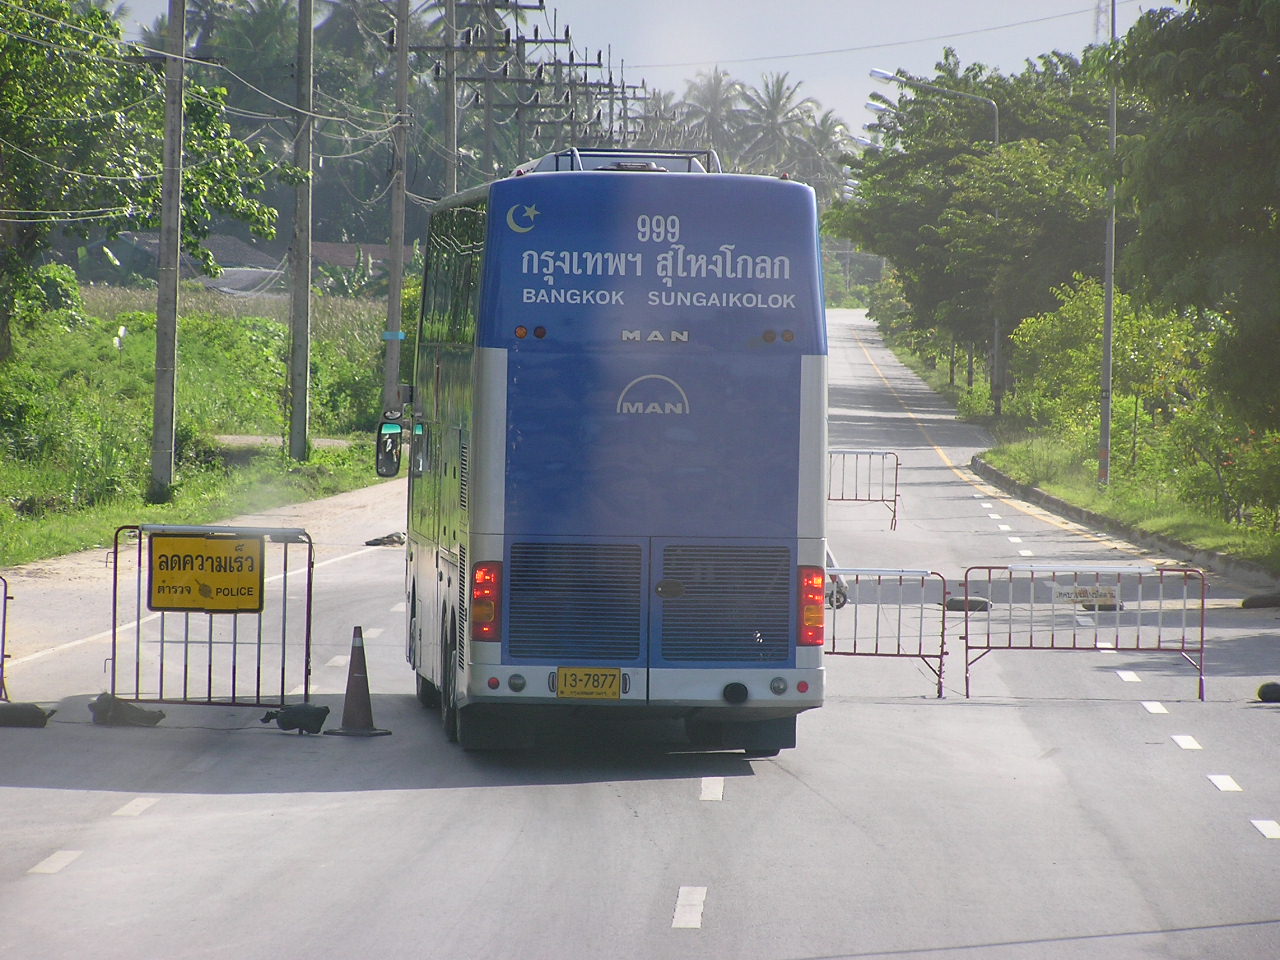 Sg Golok - Bangkok express bus travels 1100 km one way.